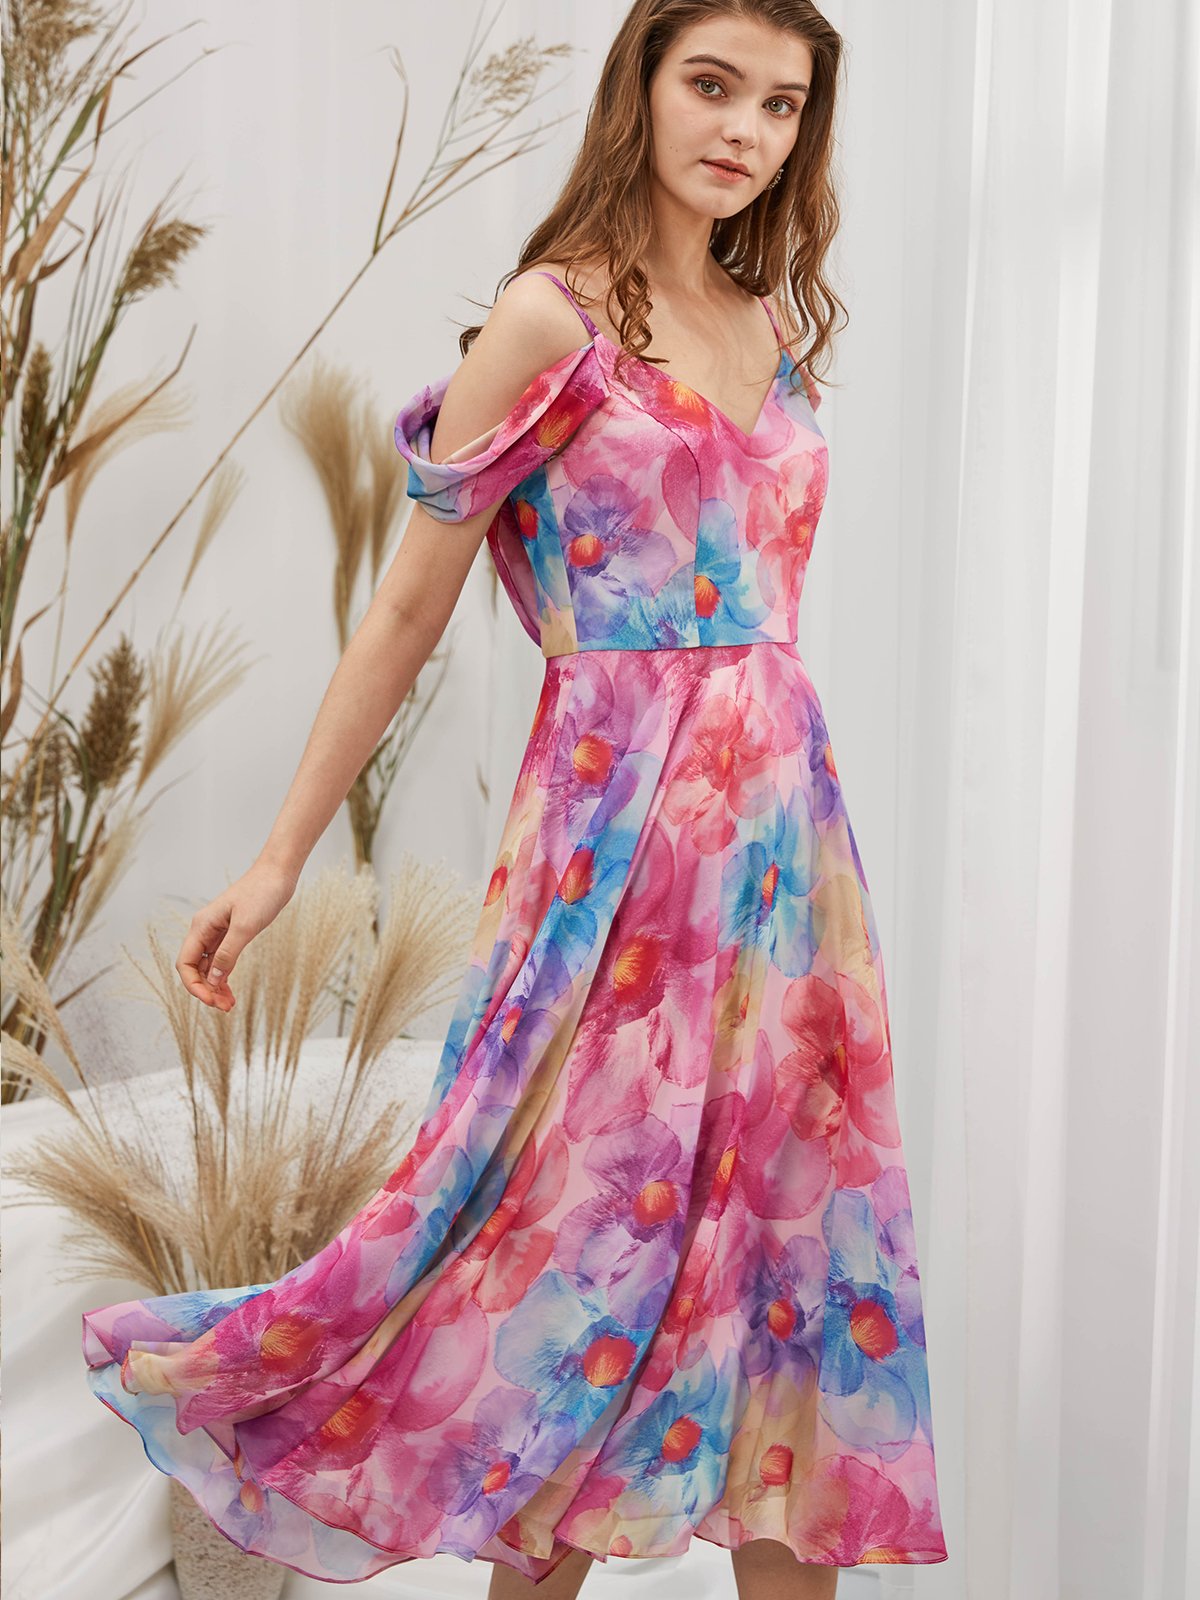 Träger V-Ausschnitt, schulterfrei, formelles Kleid mit Chiffon-Print, Blumenfuchsia, Teelänge